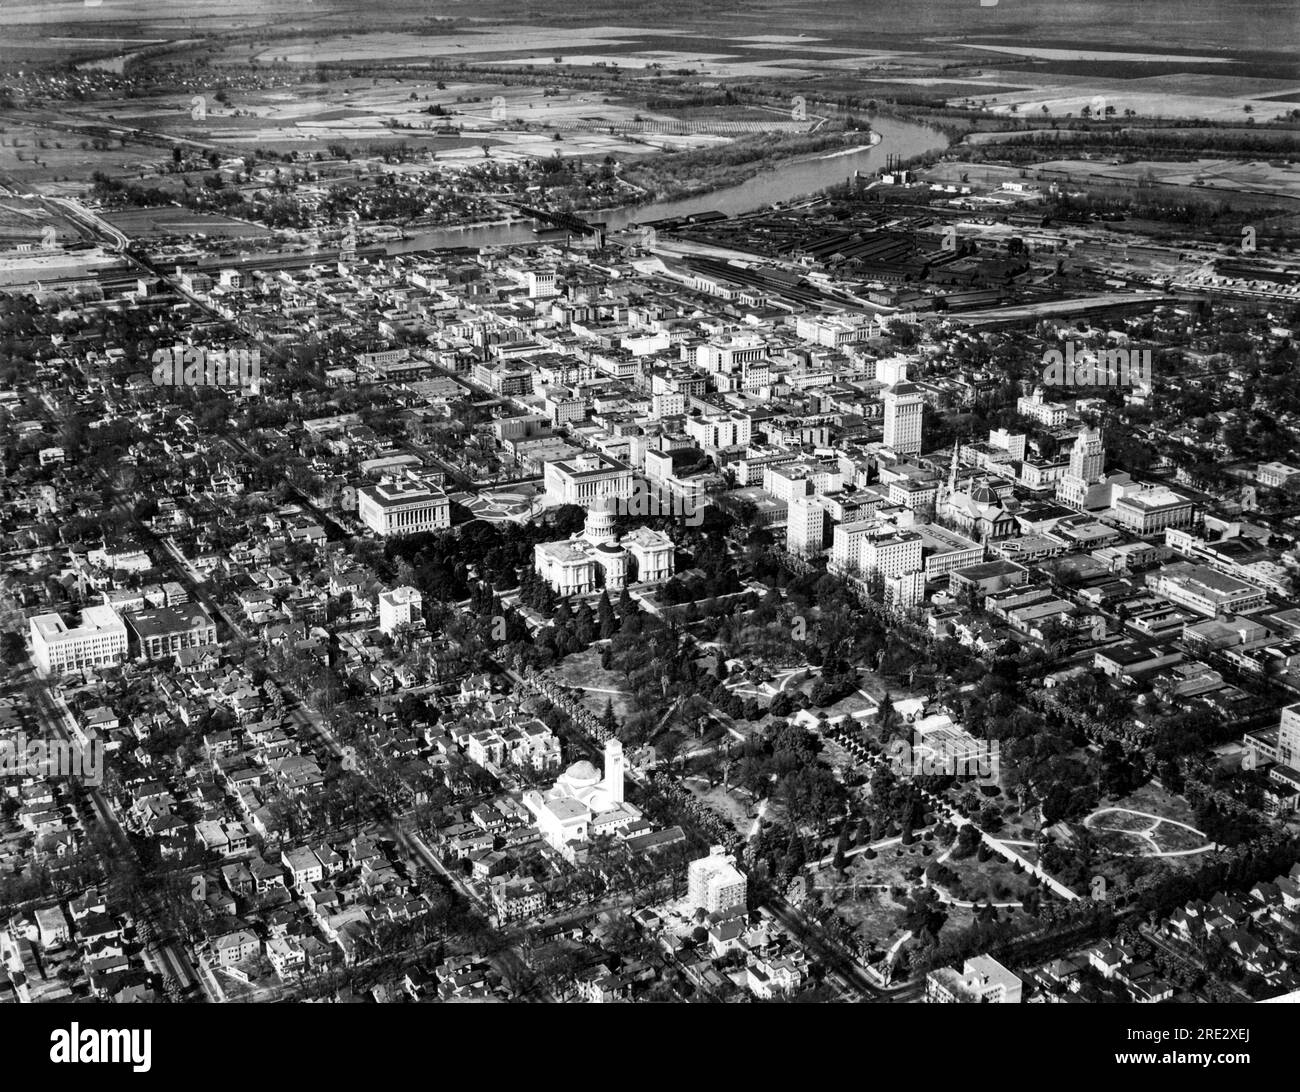 Sacramento, Californie, le 12 avril 1933 vue aérienne du Capitole de l'État de Californie entre les bâtiments Capitol Park et Capitol extension, les sections commerciales et industrielles et la rivière Sacramento. Banque D'Images